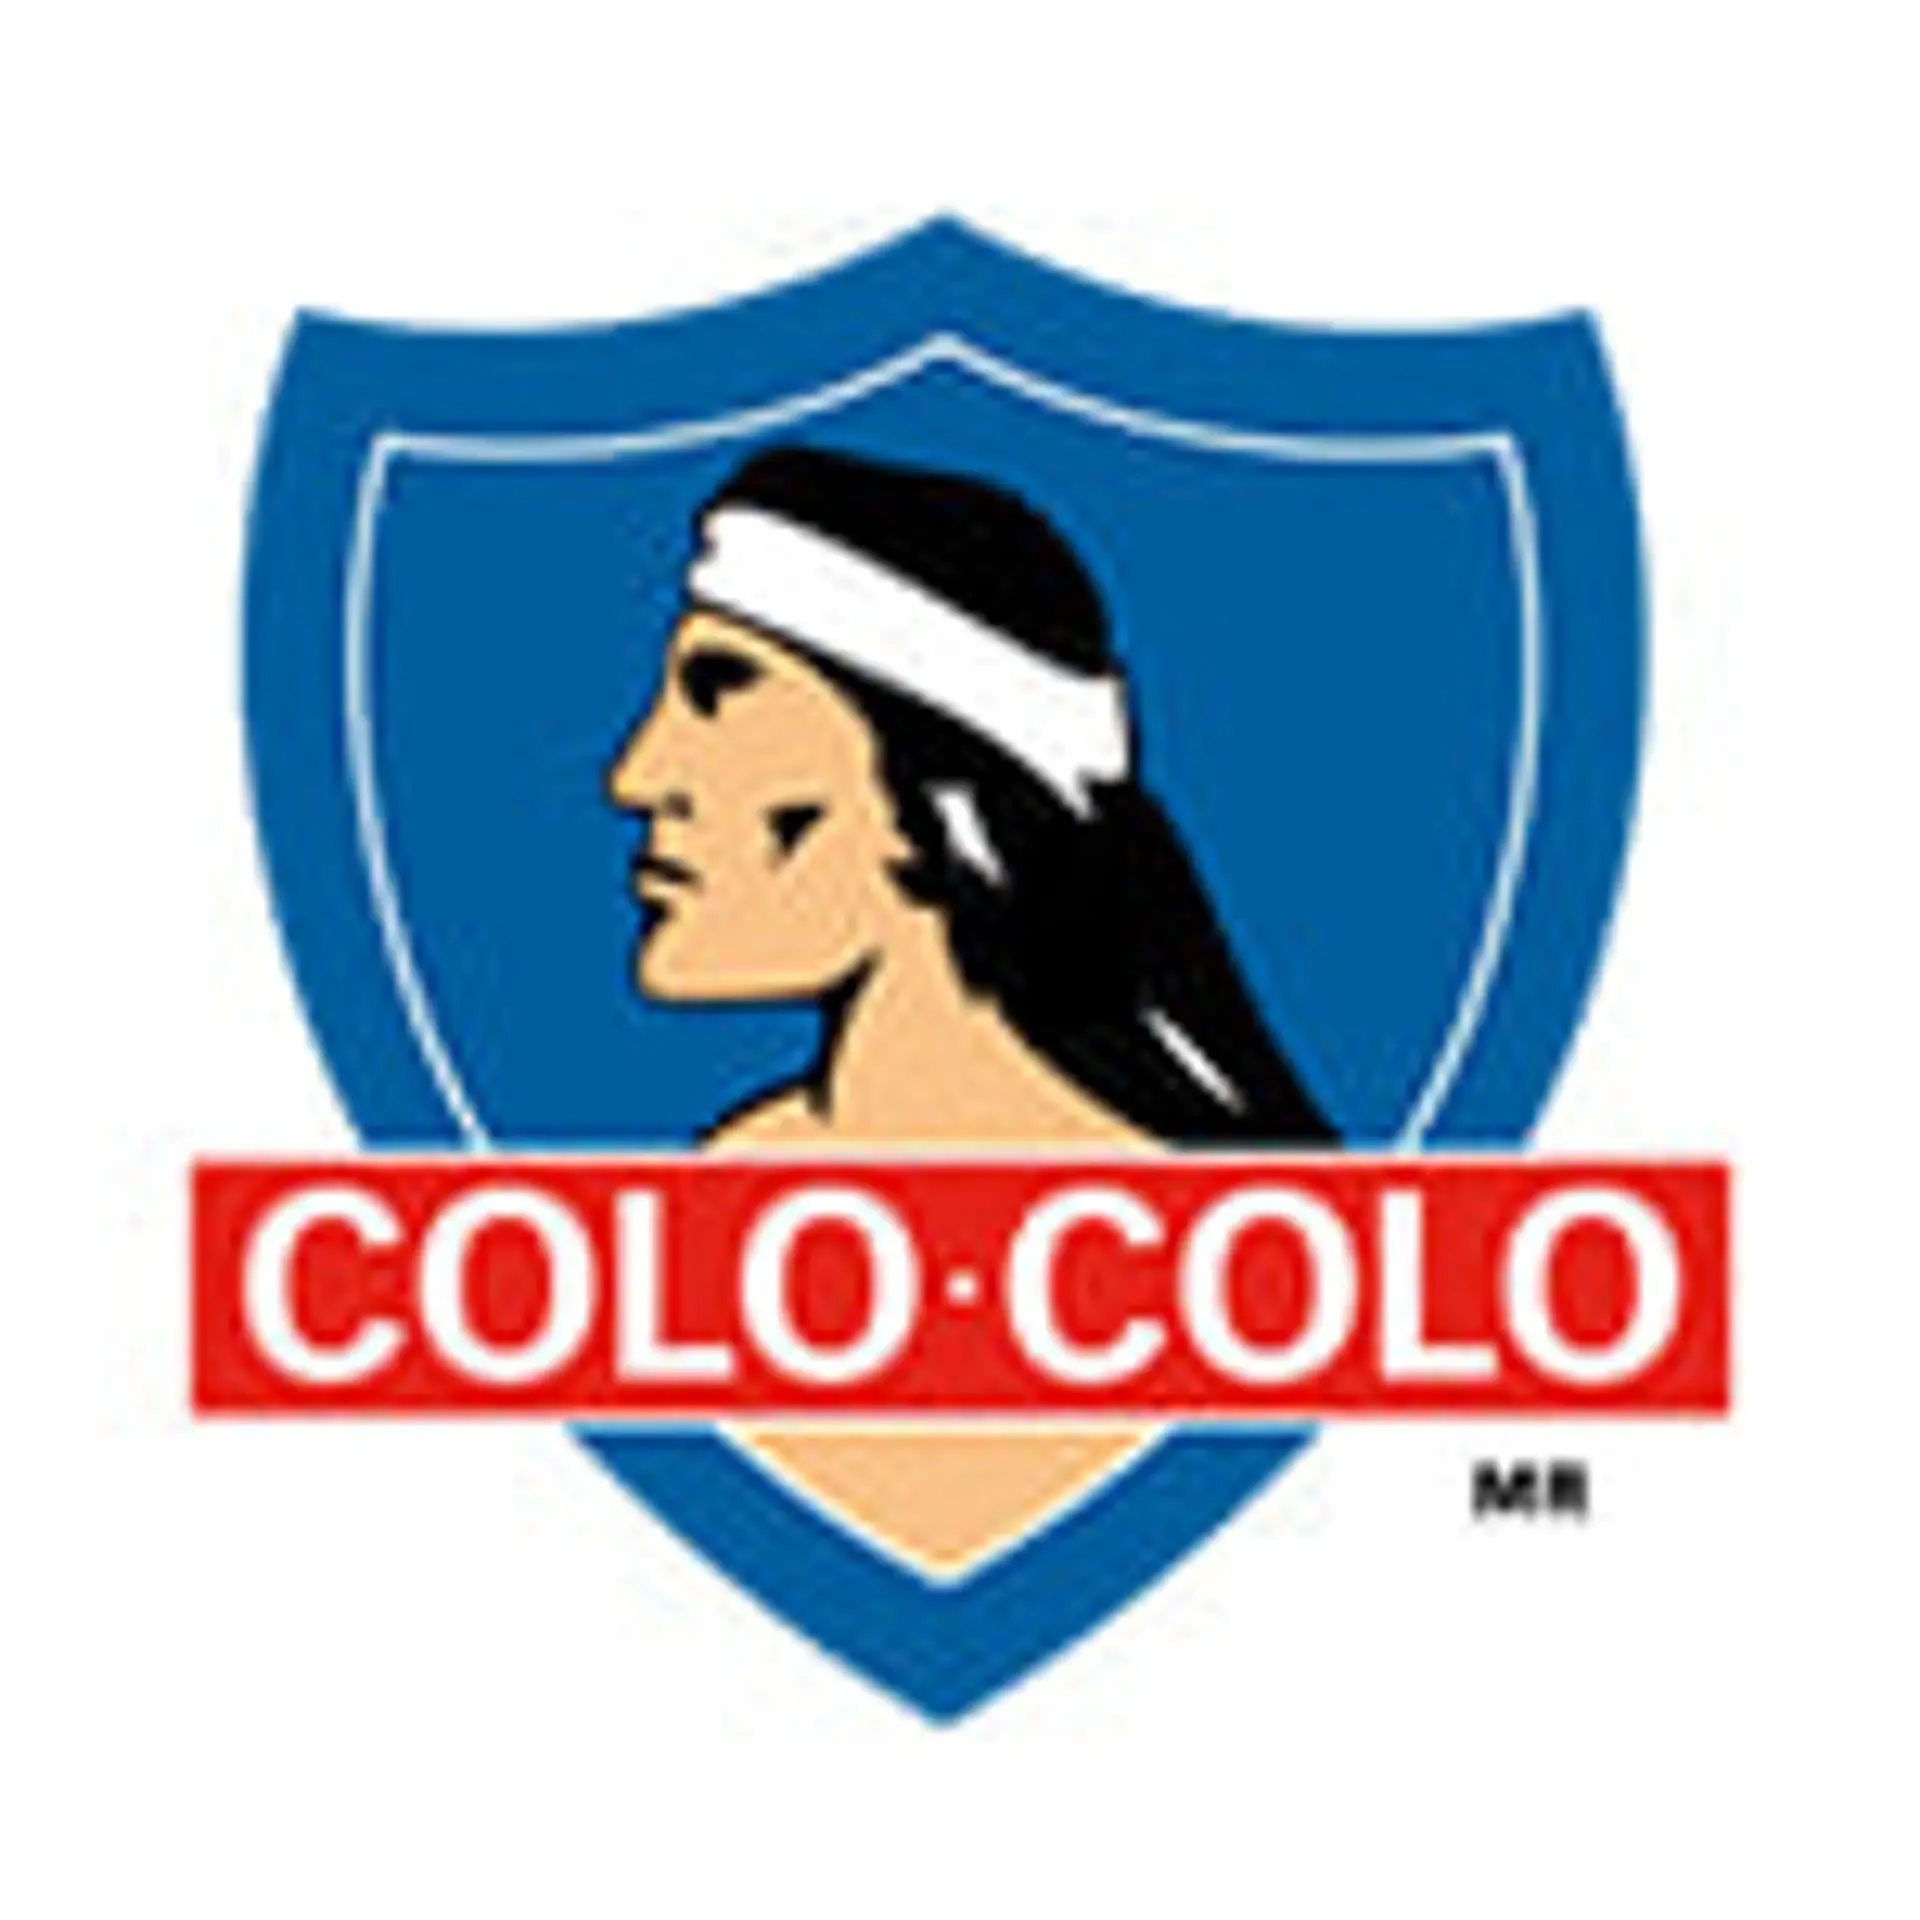 Colo Colo  Table